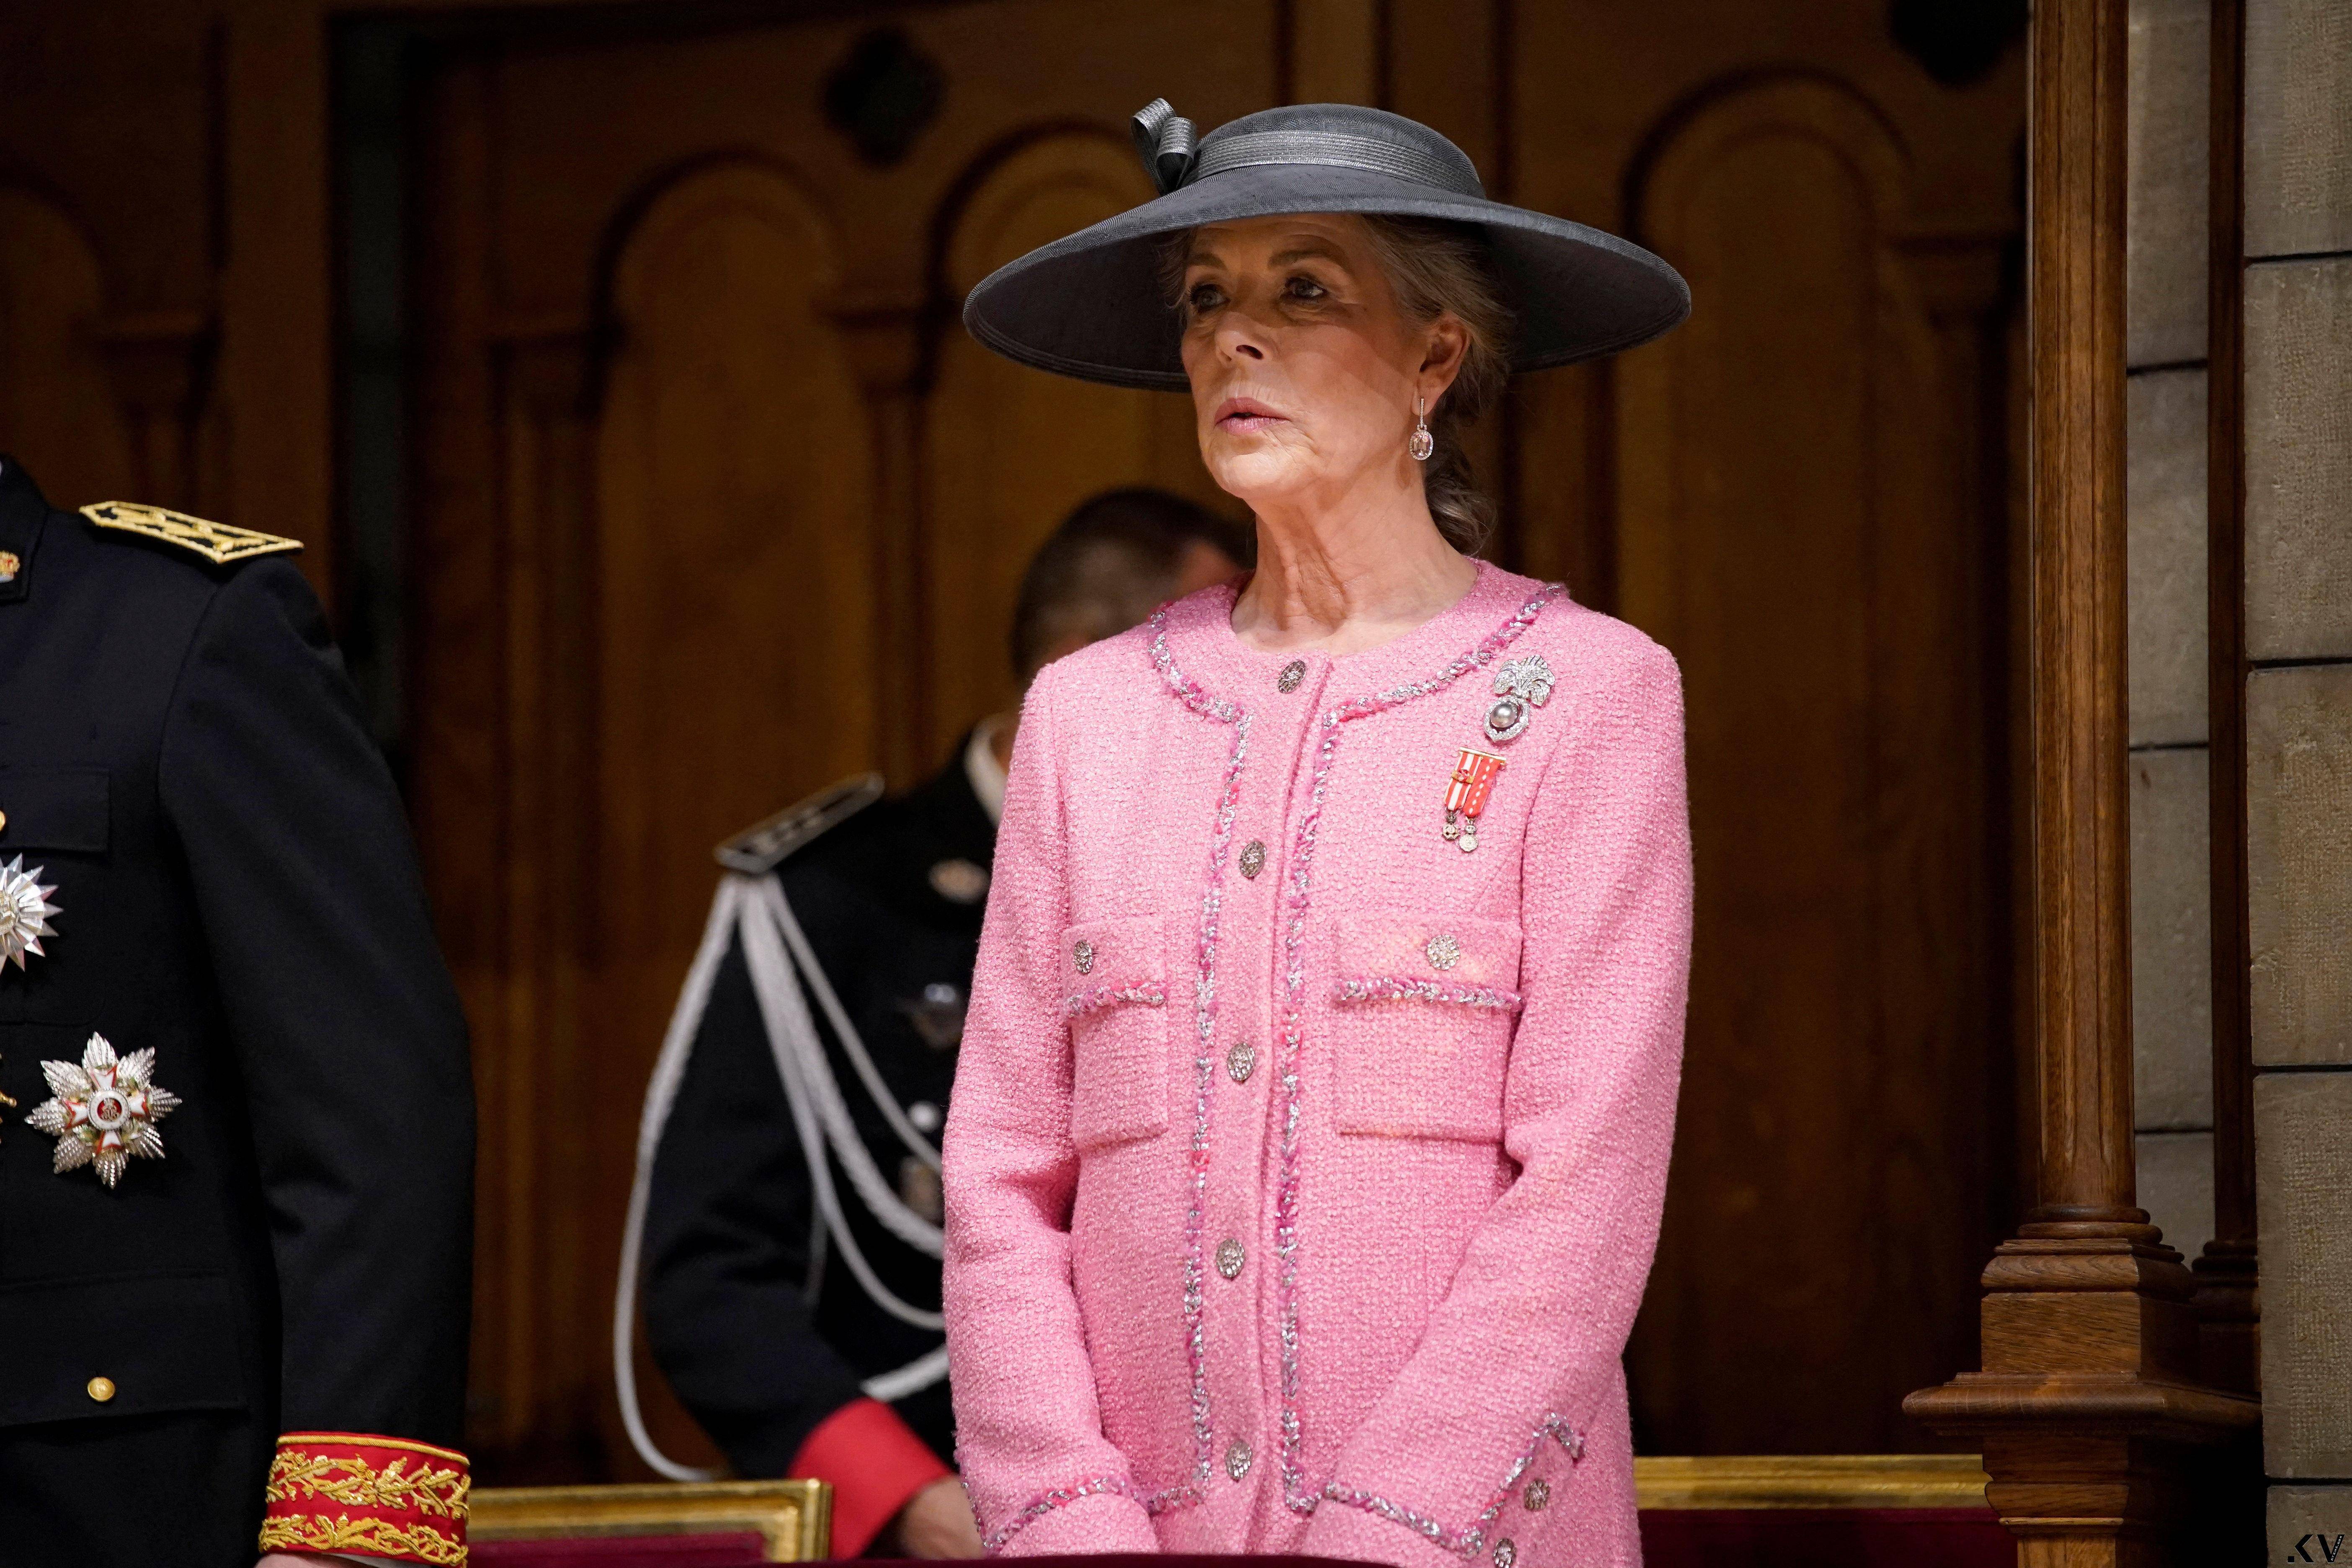 摩纳哥王室把香奈儿当制服穿　“最美王子妃”Dior红装突围 奢侈品牌 图5张